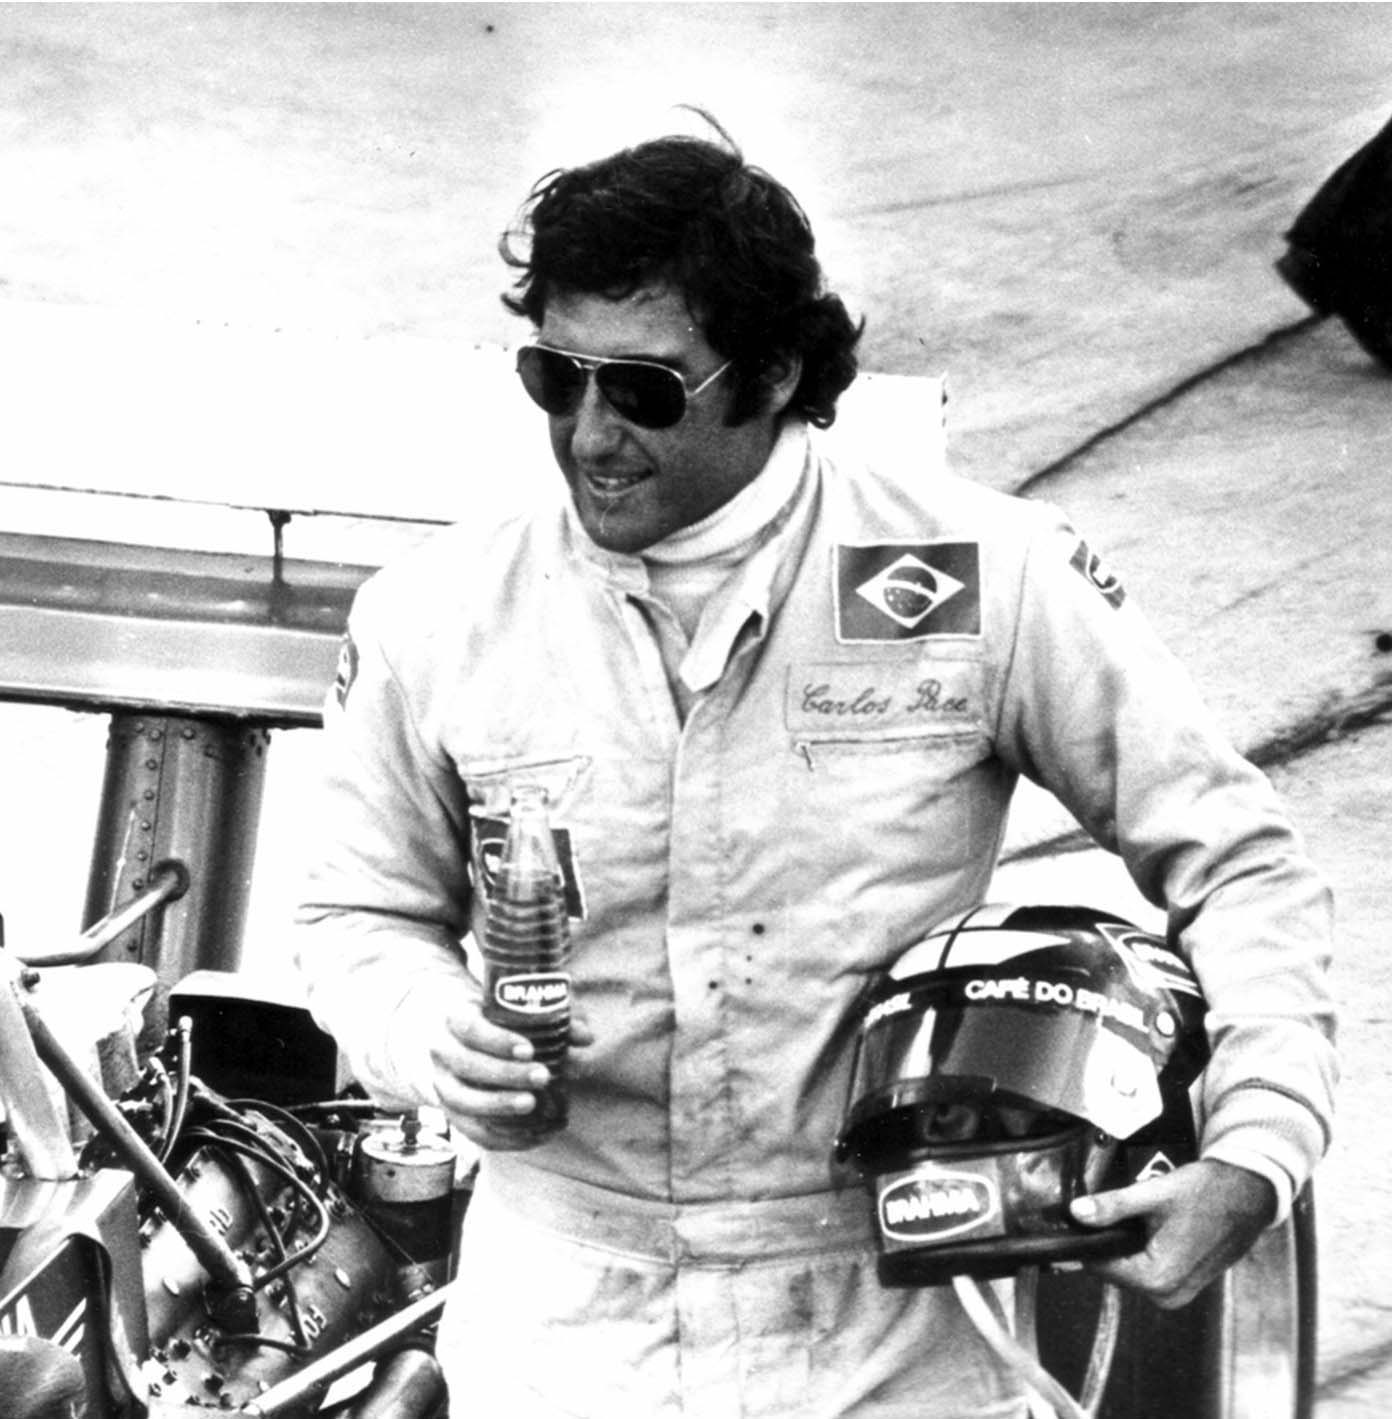 18/03/1977, en un accidente aéreo, perdía la vida Jose Carlos Pace